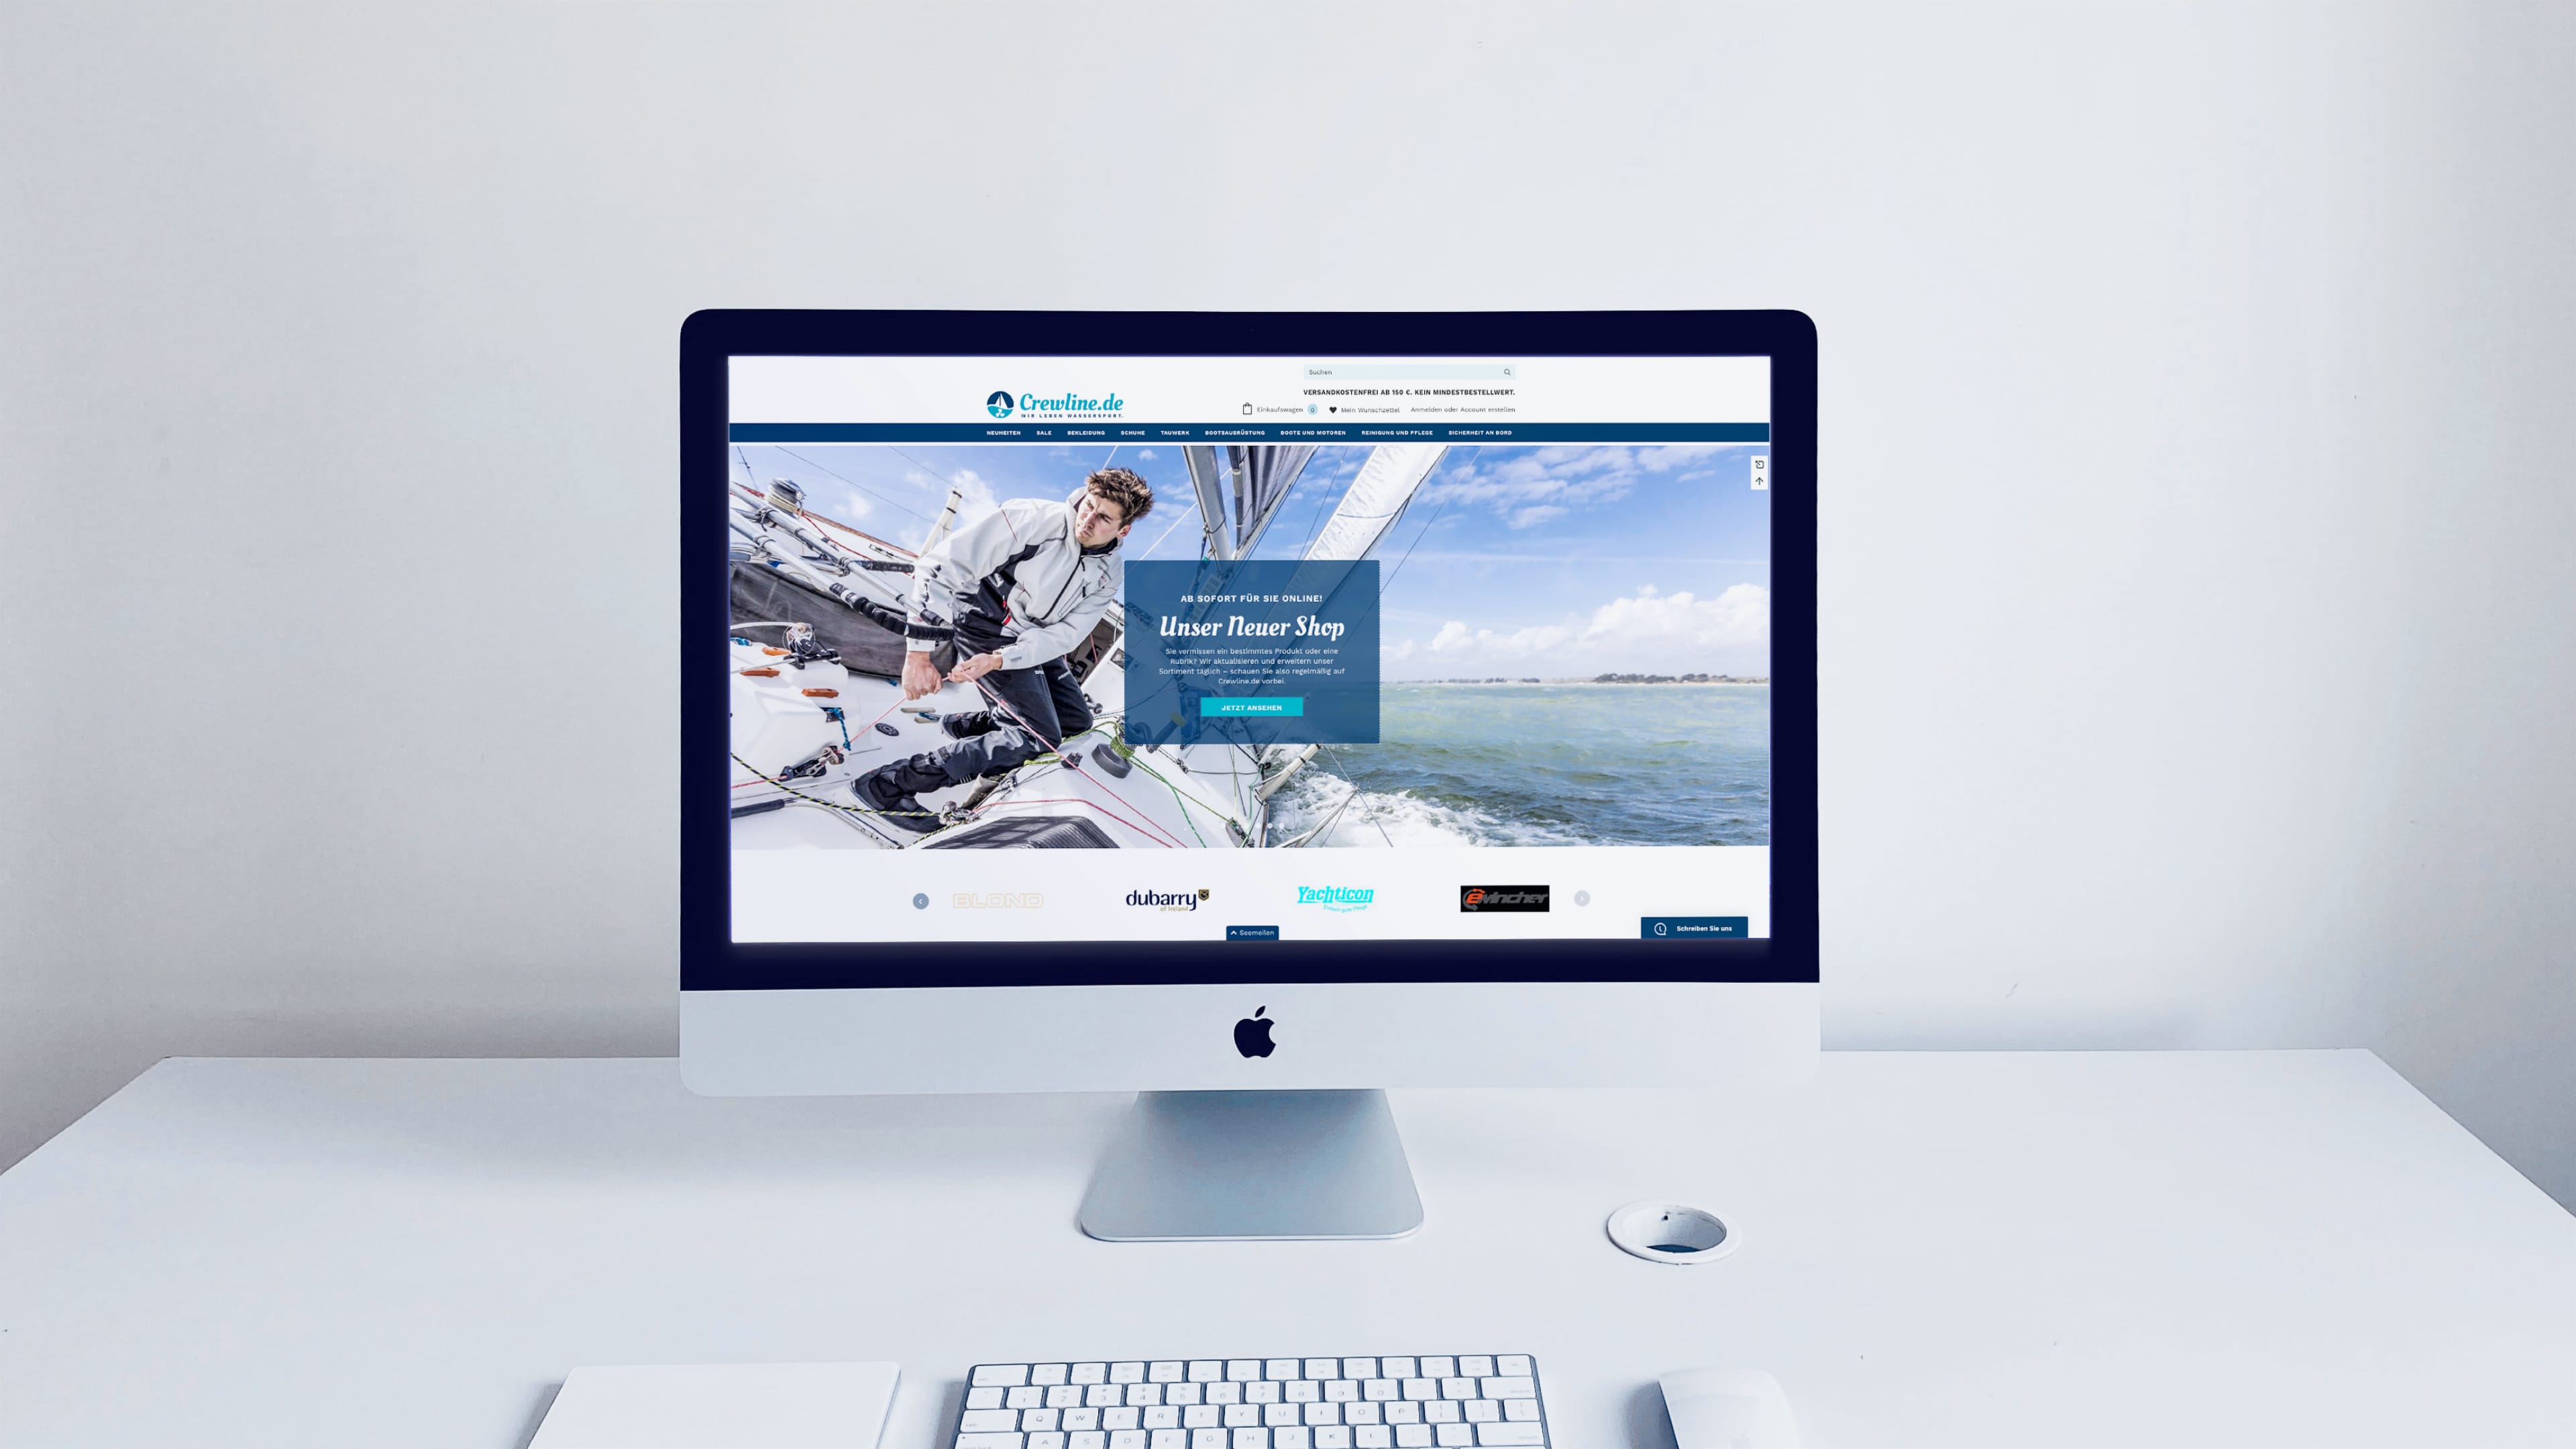 iMac auf weißem Schreibtisch zeigt Crewline.de und Text "Unser neuer Shop"